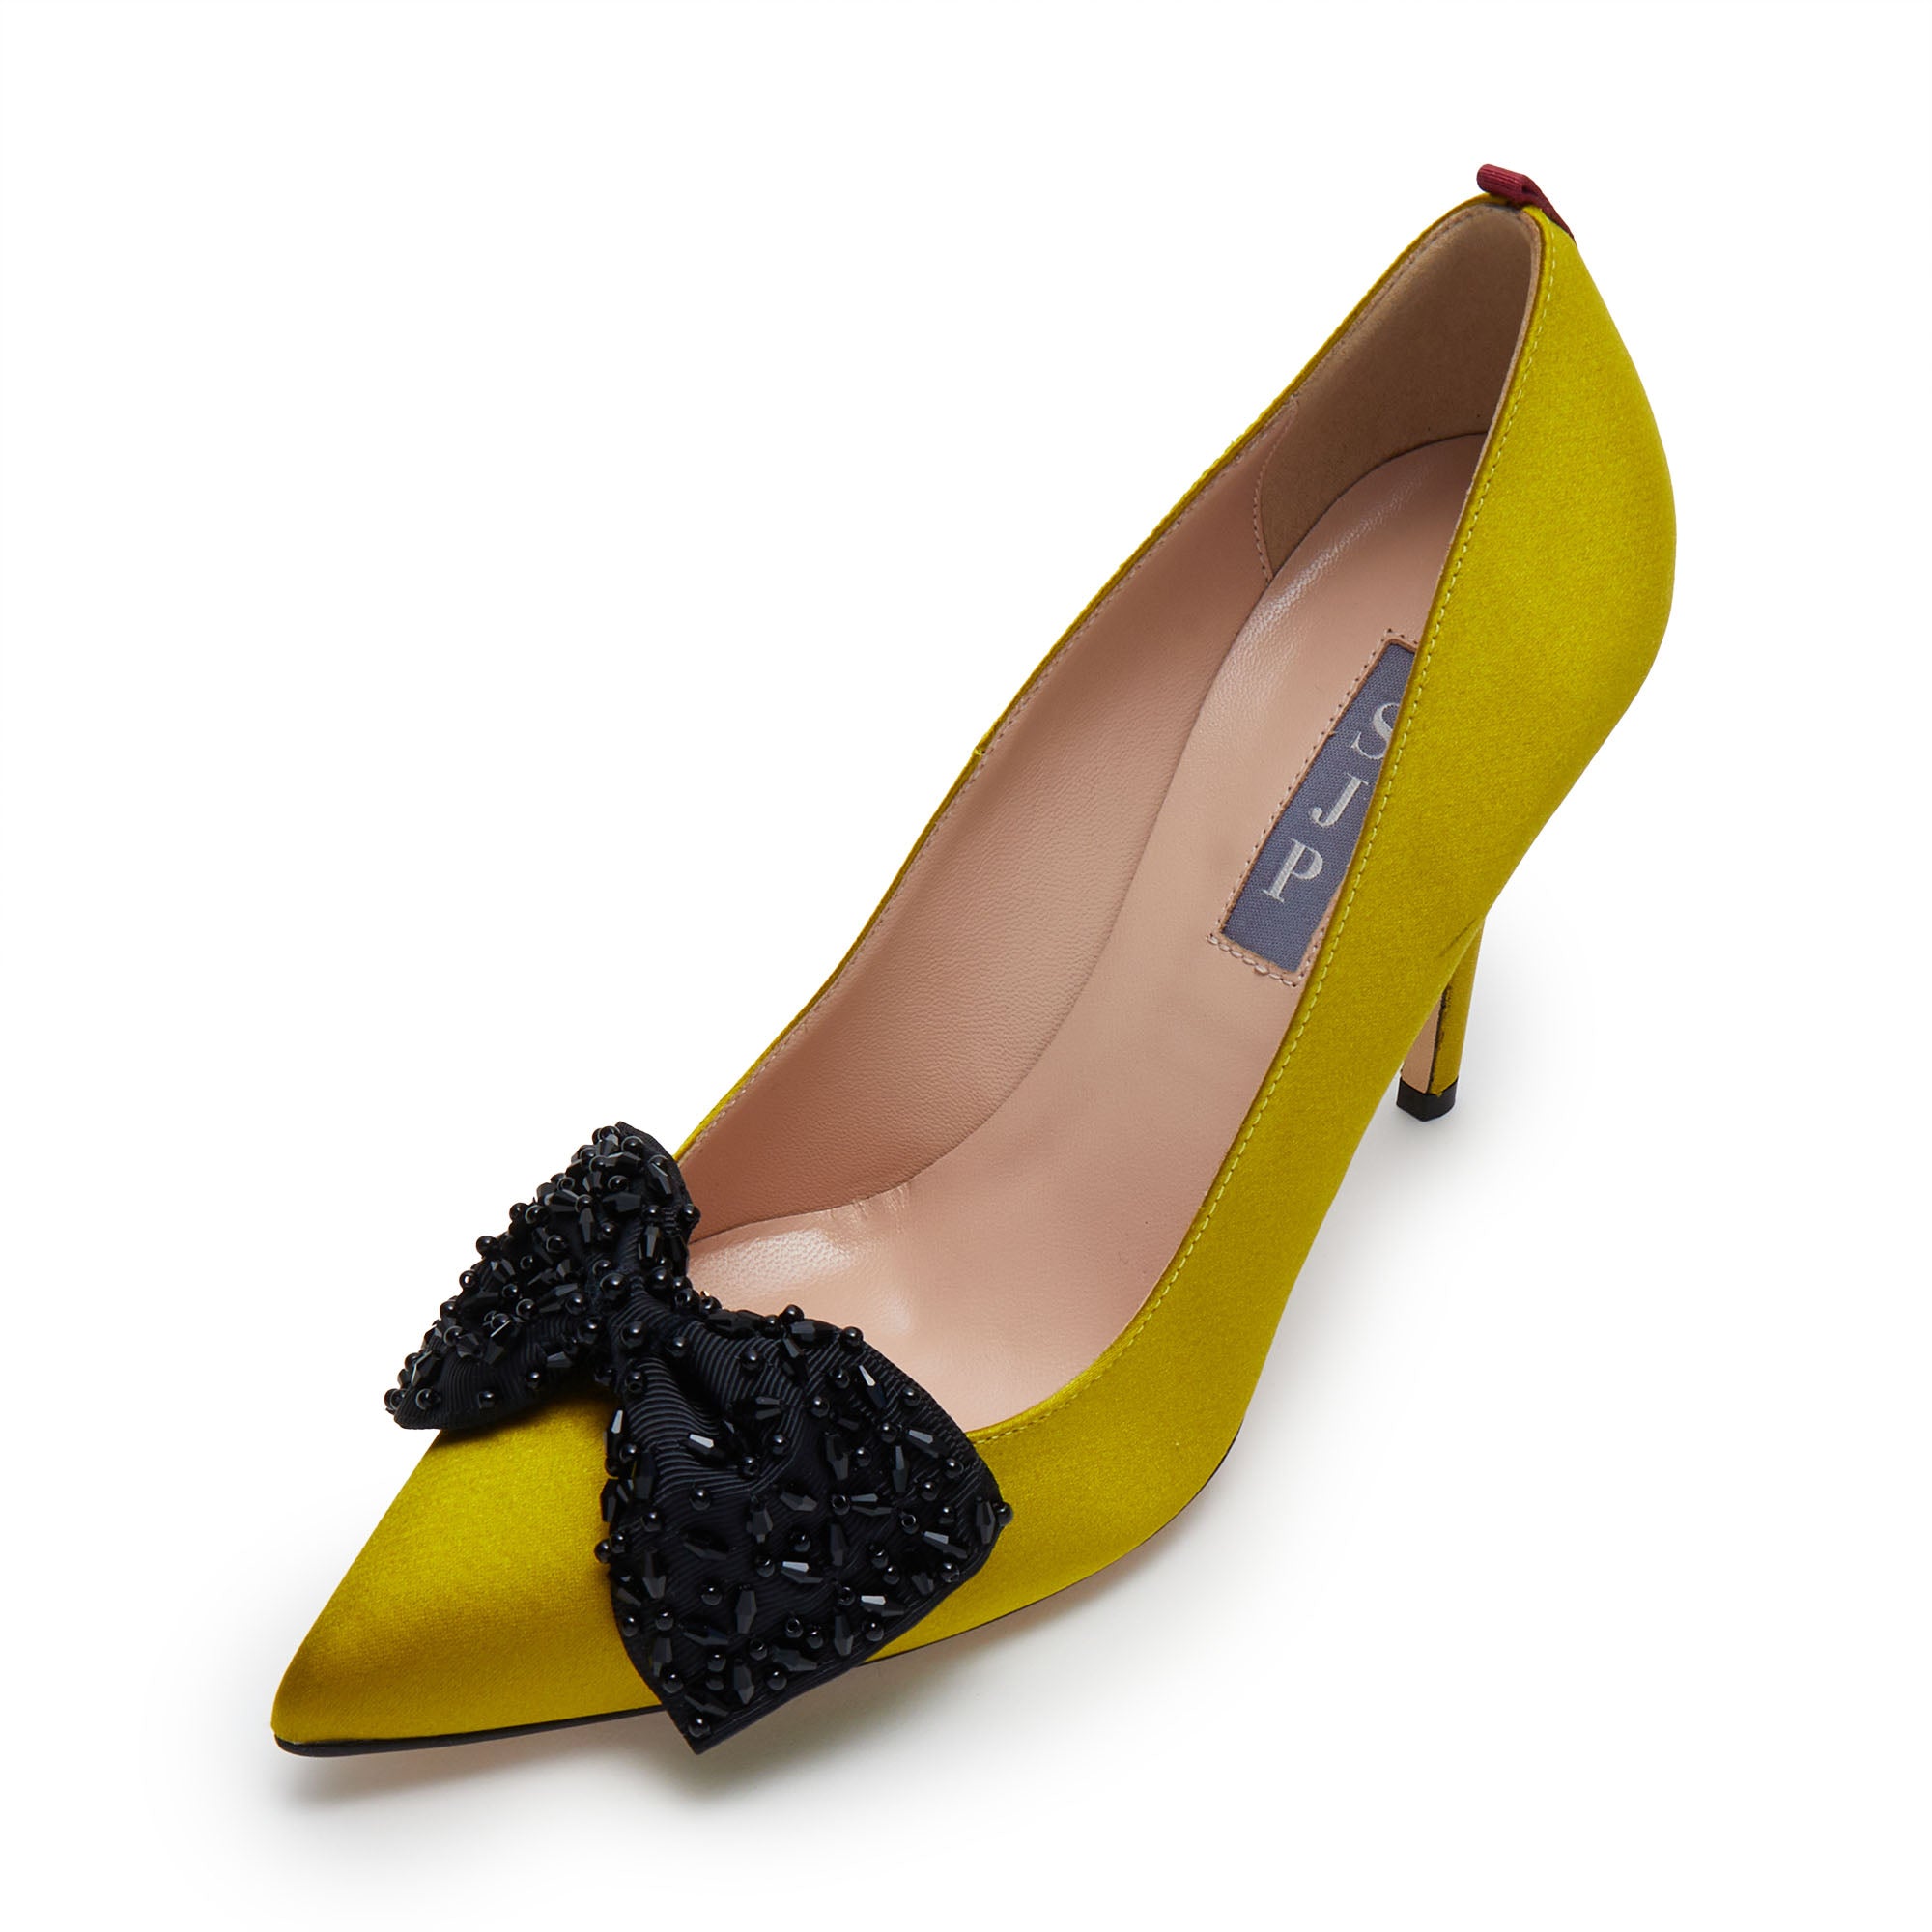 Buy Van Heusen Yellow Heels Online - 806275 | Van Heusen